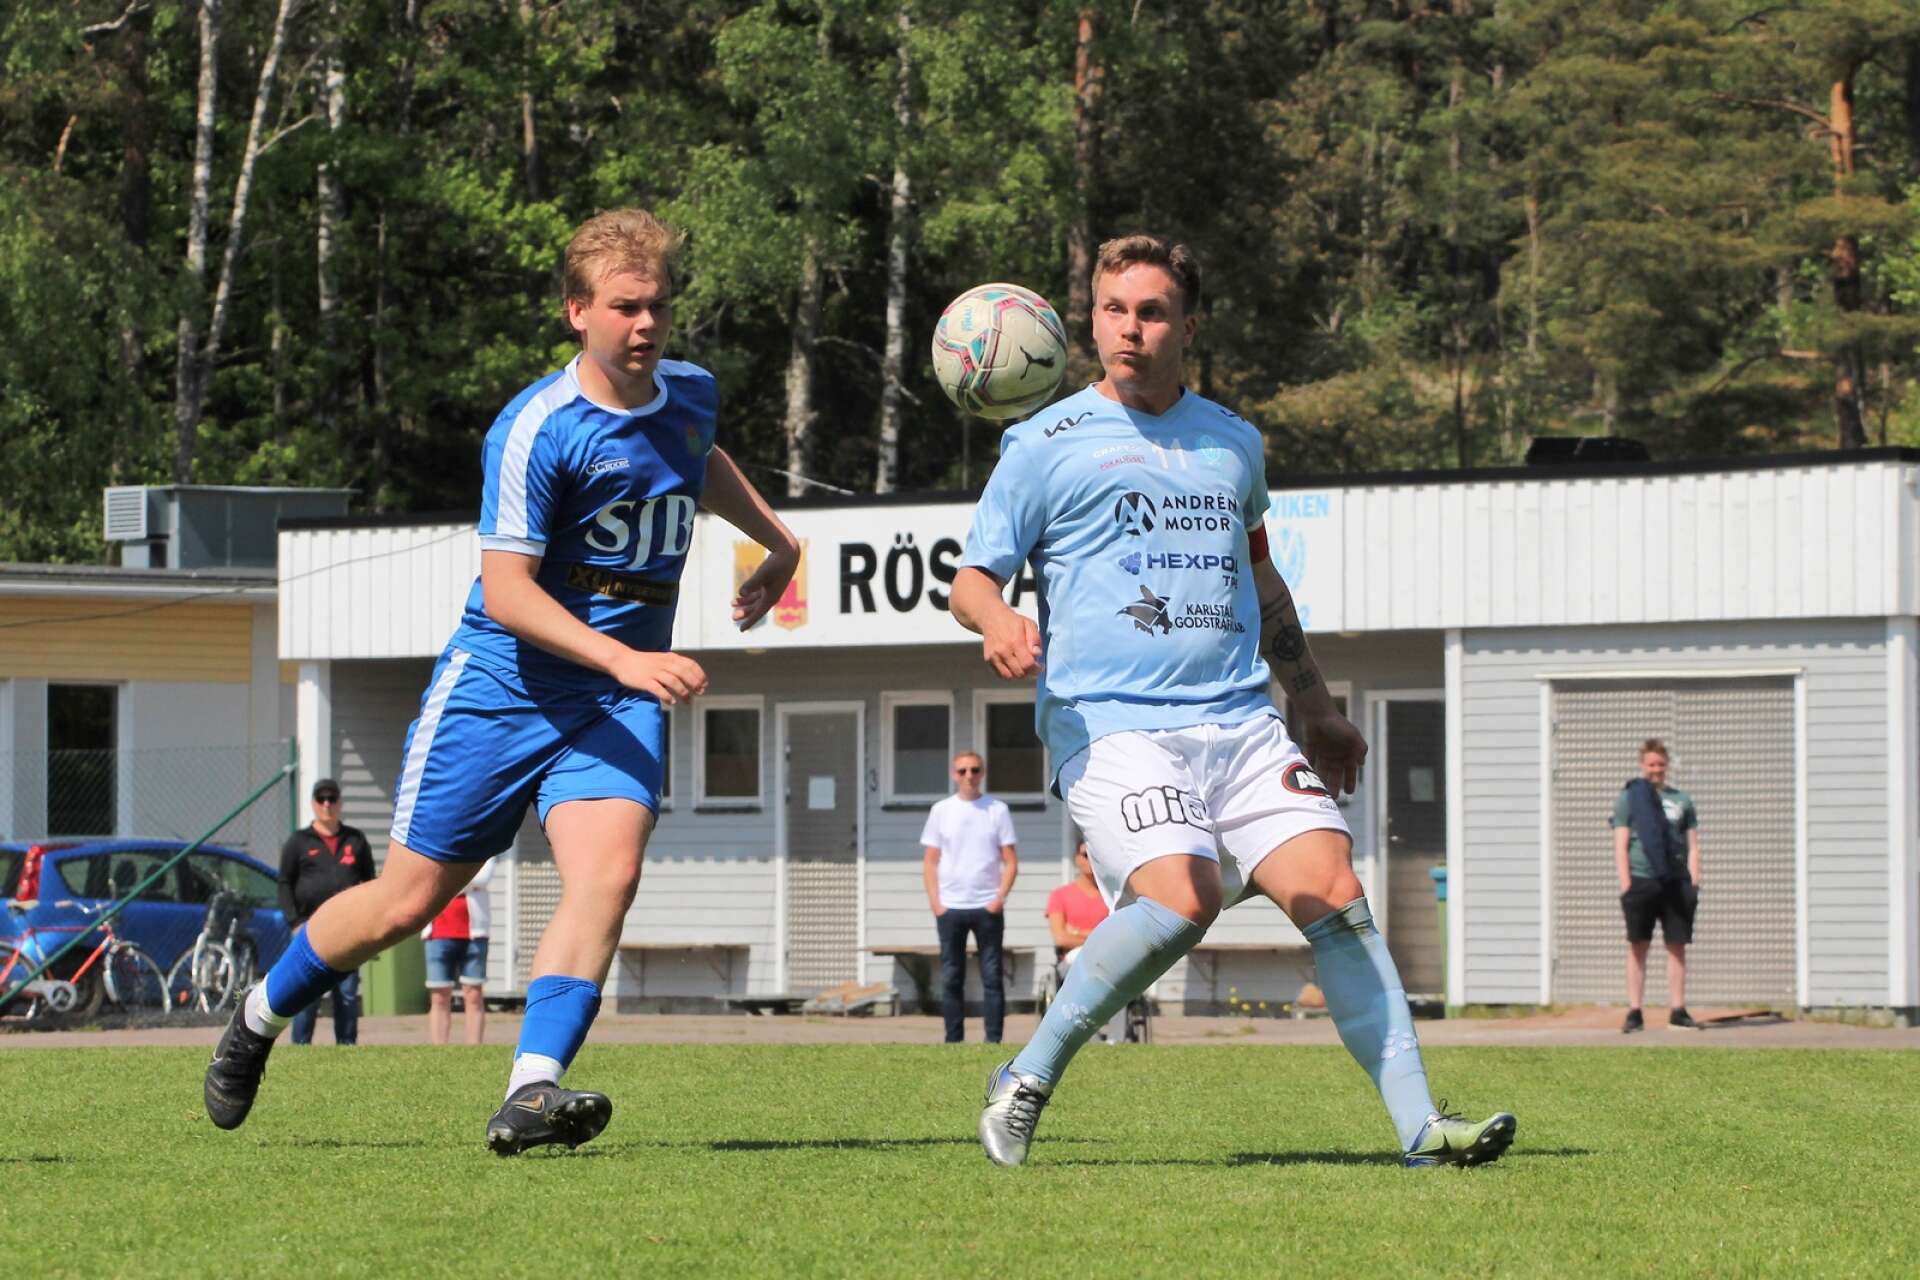 Rasmus Bergström plockar ner bollen medan Max Bryntesson pressar.

Fotboll på Rösvallen, Åmål
Division 4 Bohuslän–Dalsland
IF Viken – Eds FF 0–2 (0–1)